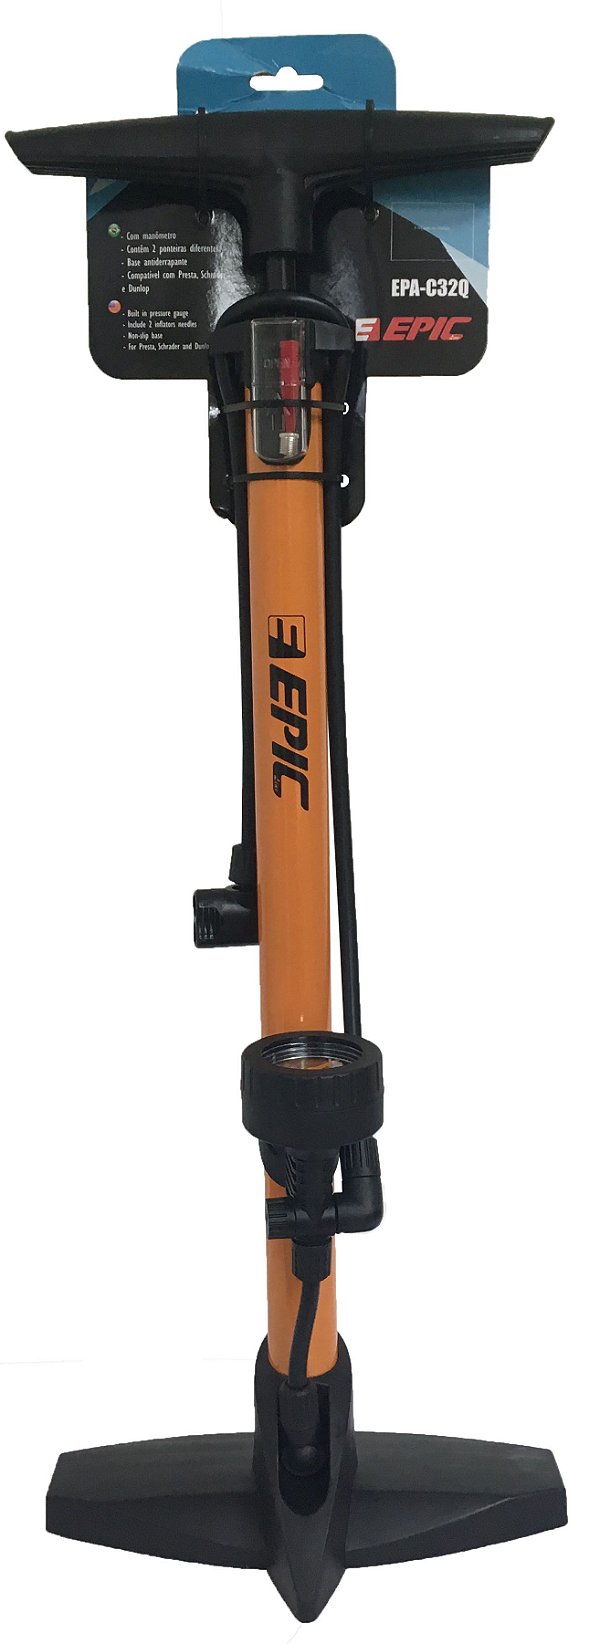 Bomba de chão Epic EPA-C32Q laranja com manômetro